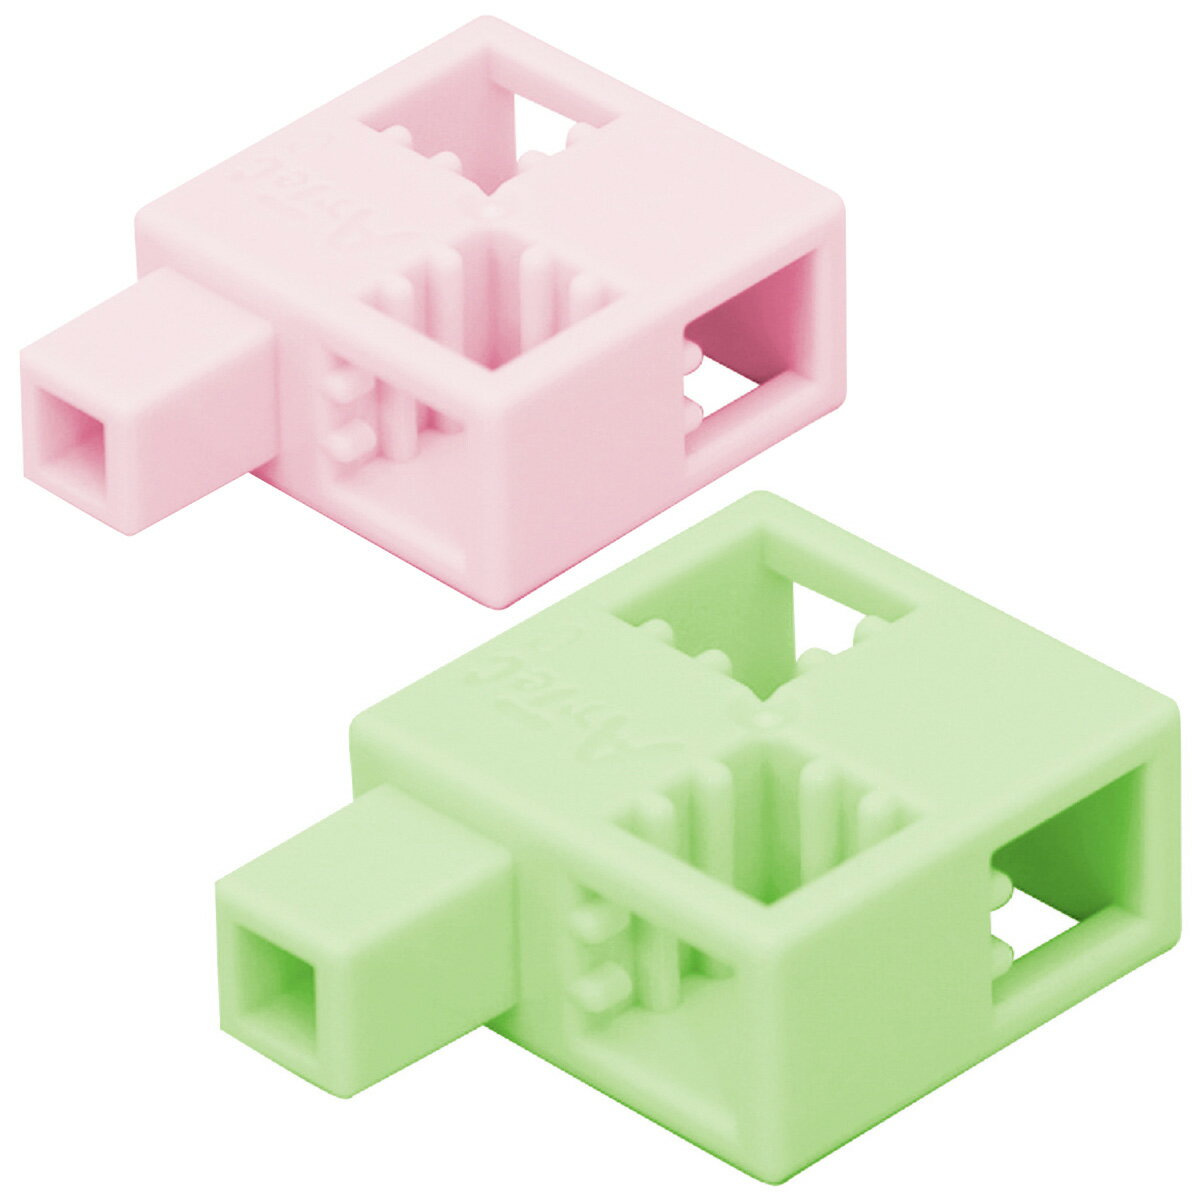 ブロック おもちゃ アーテックブロックハーフQ 8pcsセット 日本製 レゴ レゴブロックのように遊べます 室内